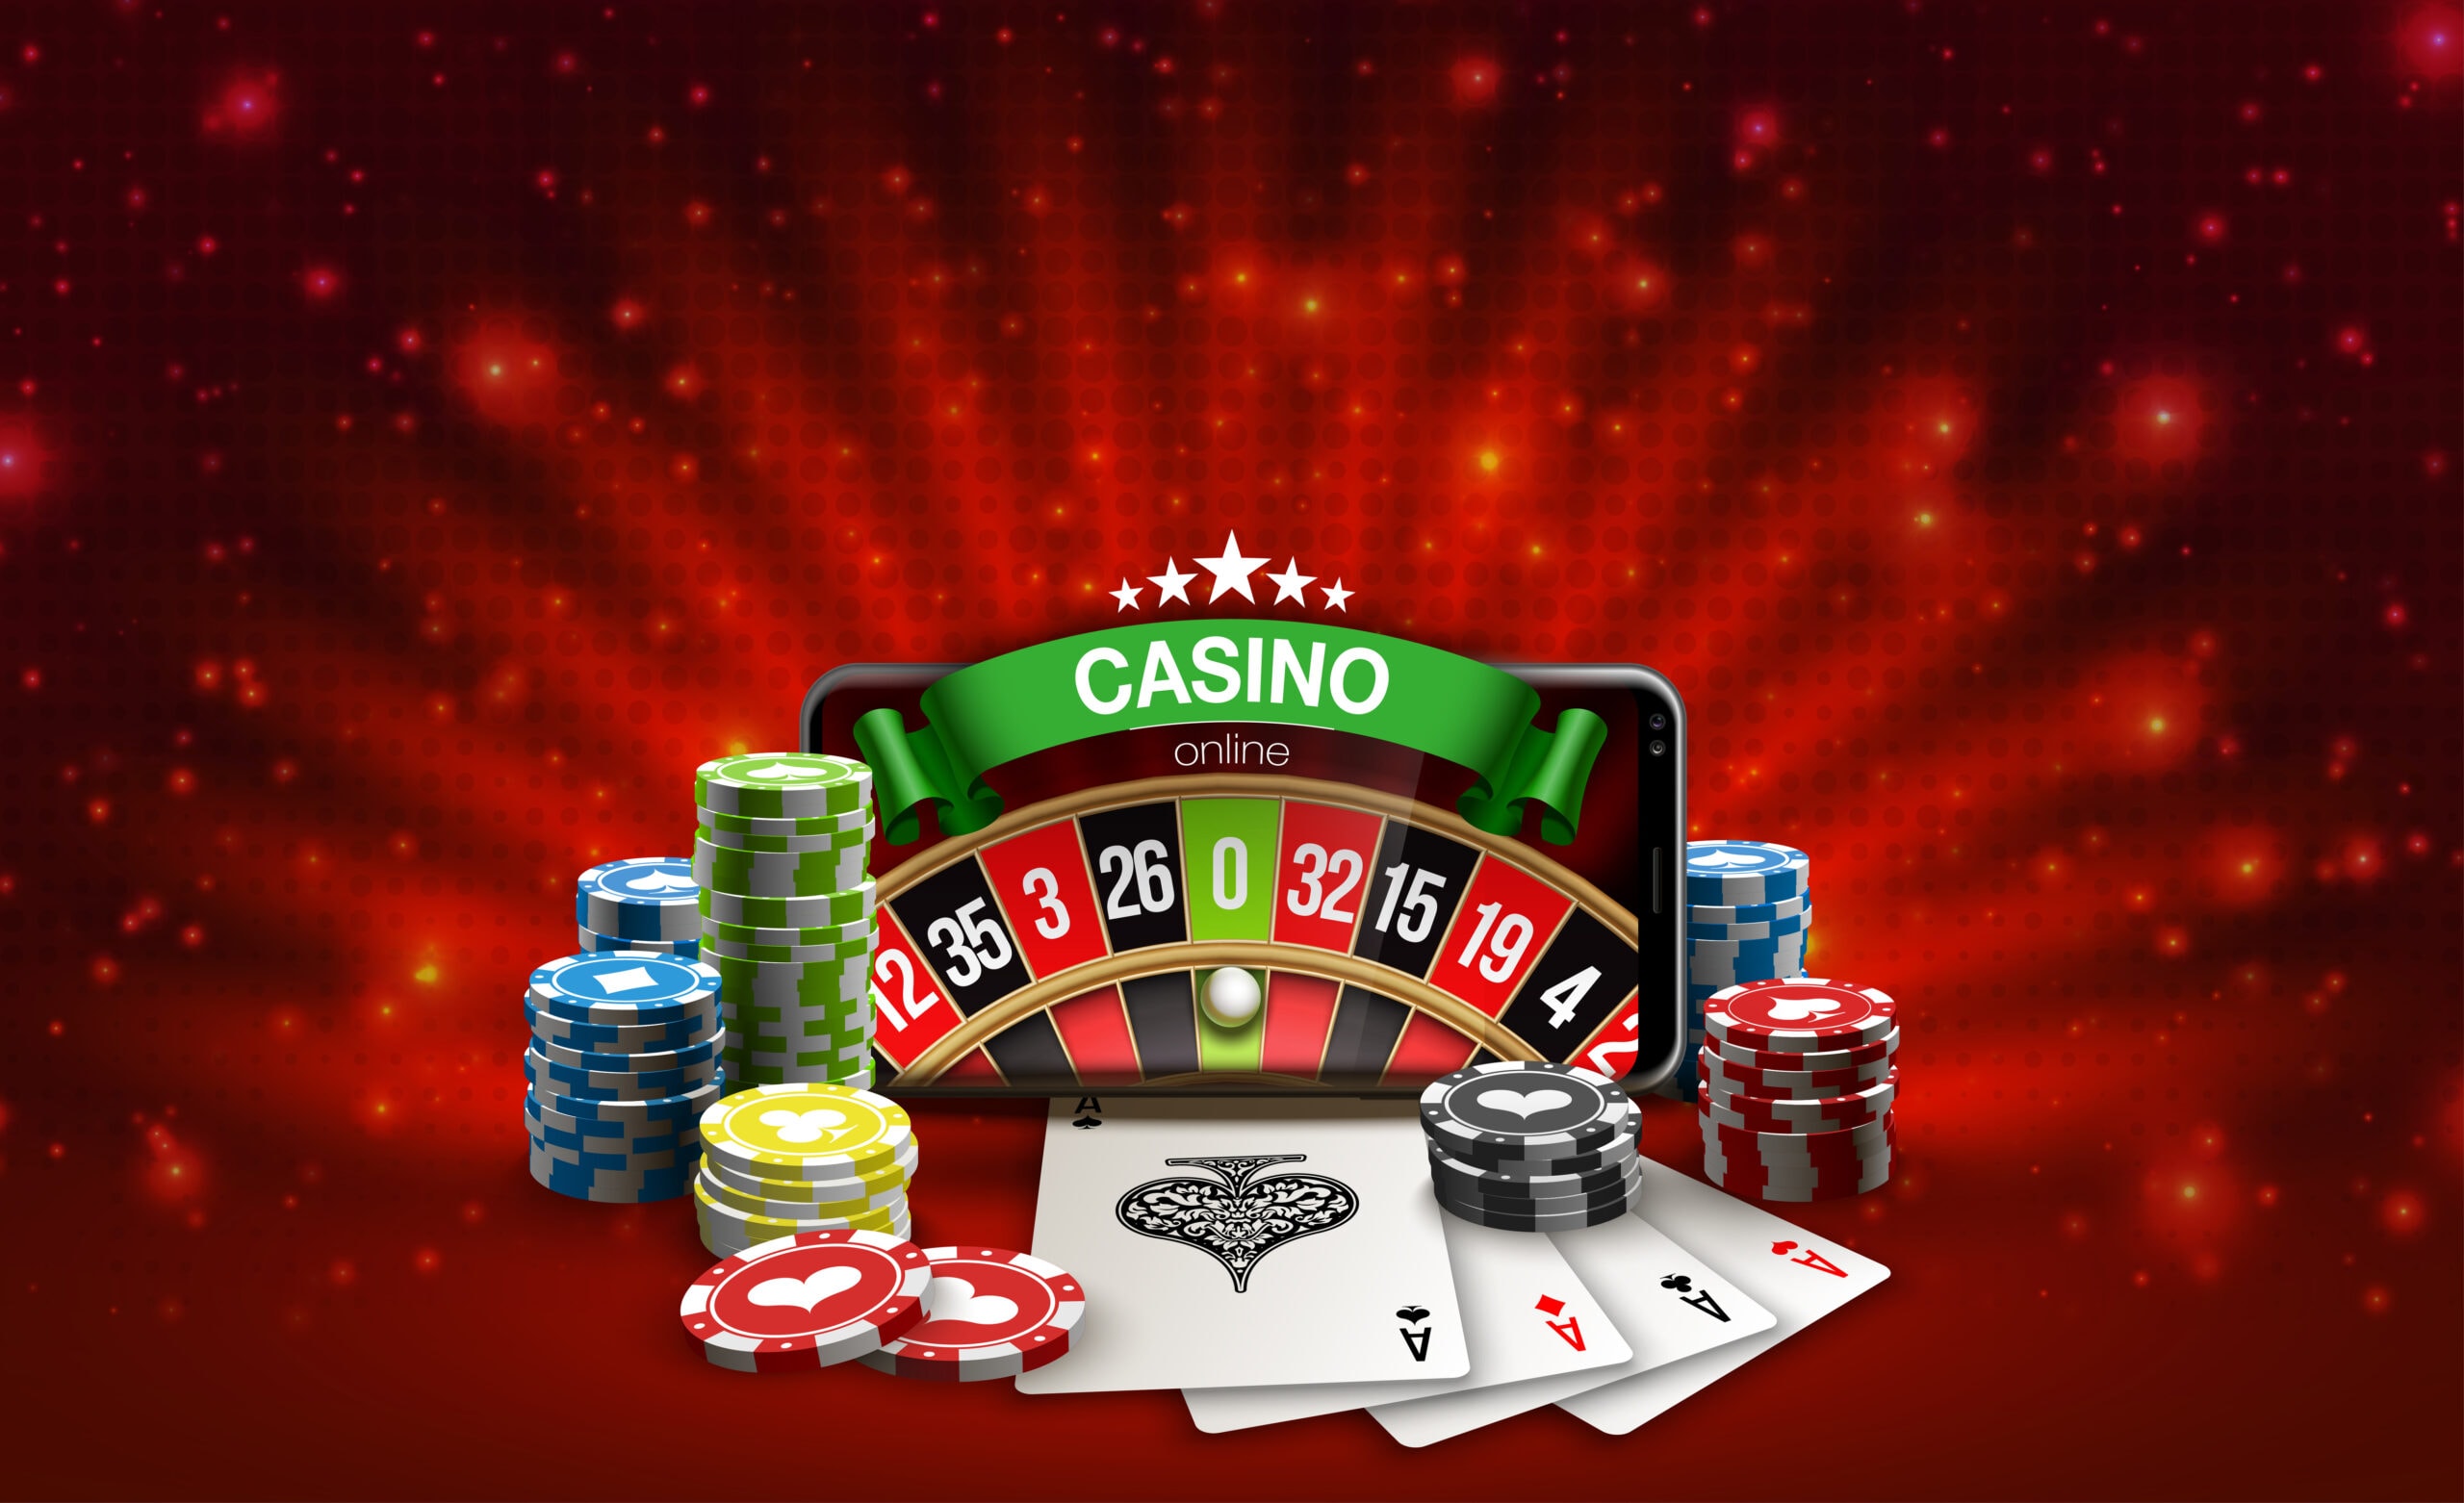 Onlinew casino deutschland gesetzeslage